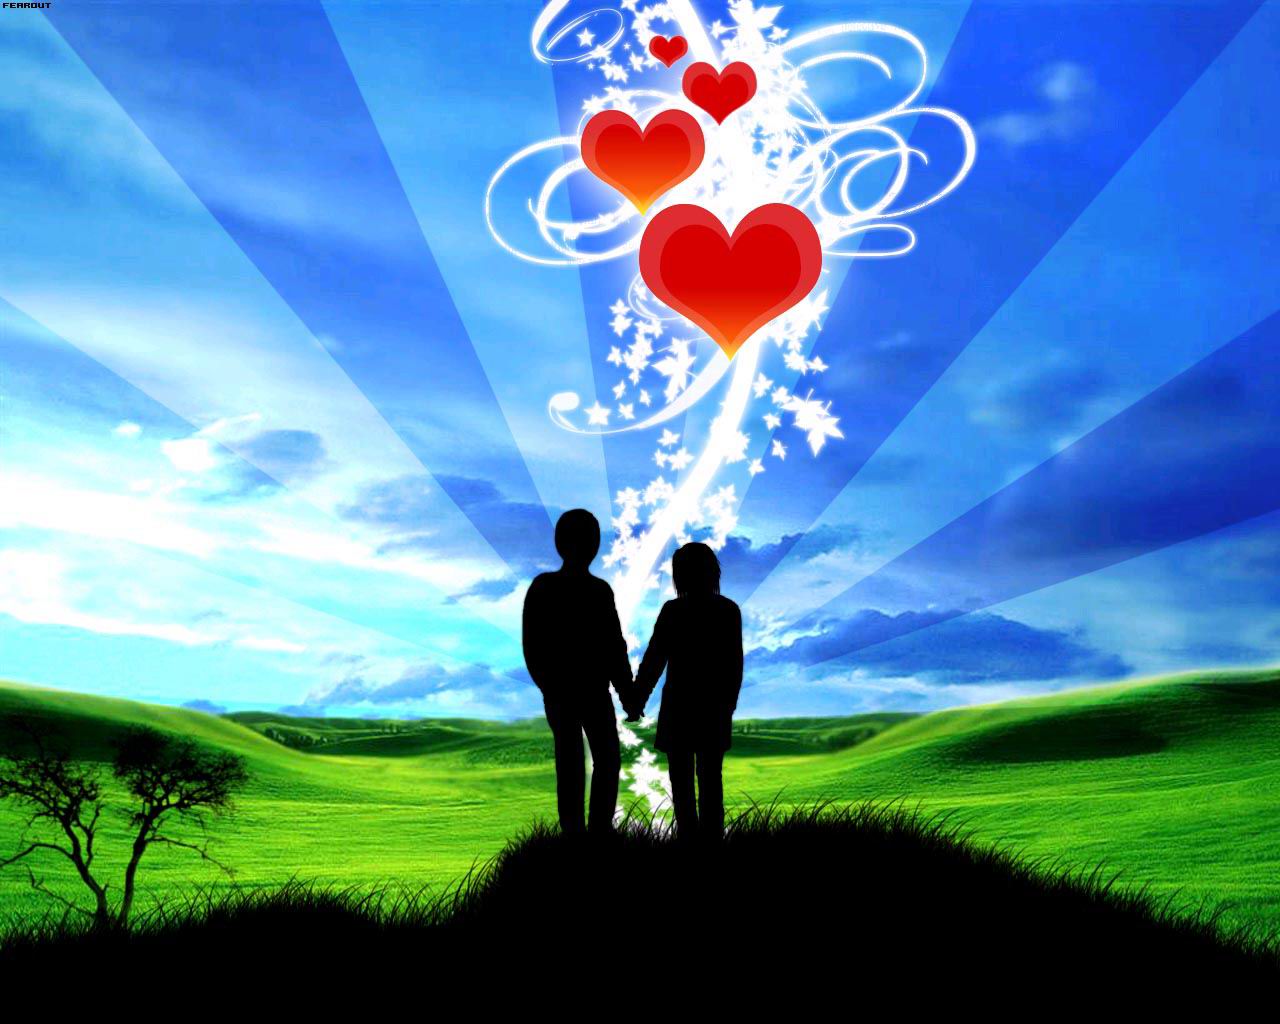 http://1.bp.blogspot.com/-gJv59IWmxz0/T2sNtQ14eOI/AAAAAAAABhI/HJuYlrG3m9I/s1600/Romantic-Love-Wallpapers-2012_01.jpg